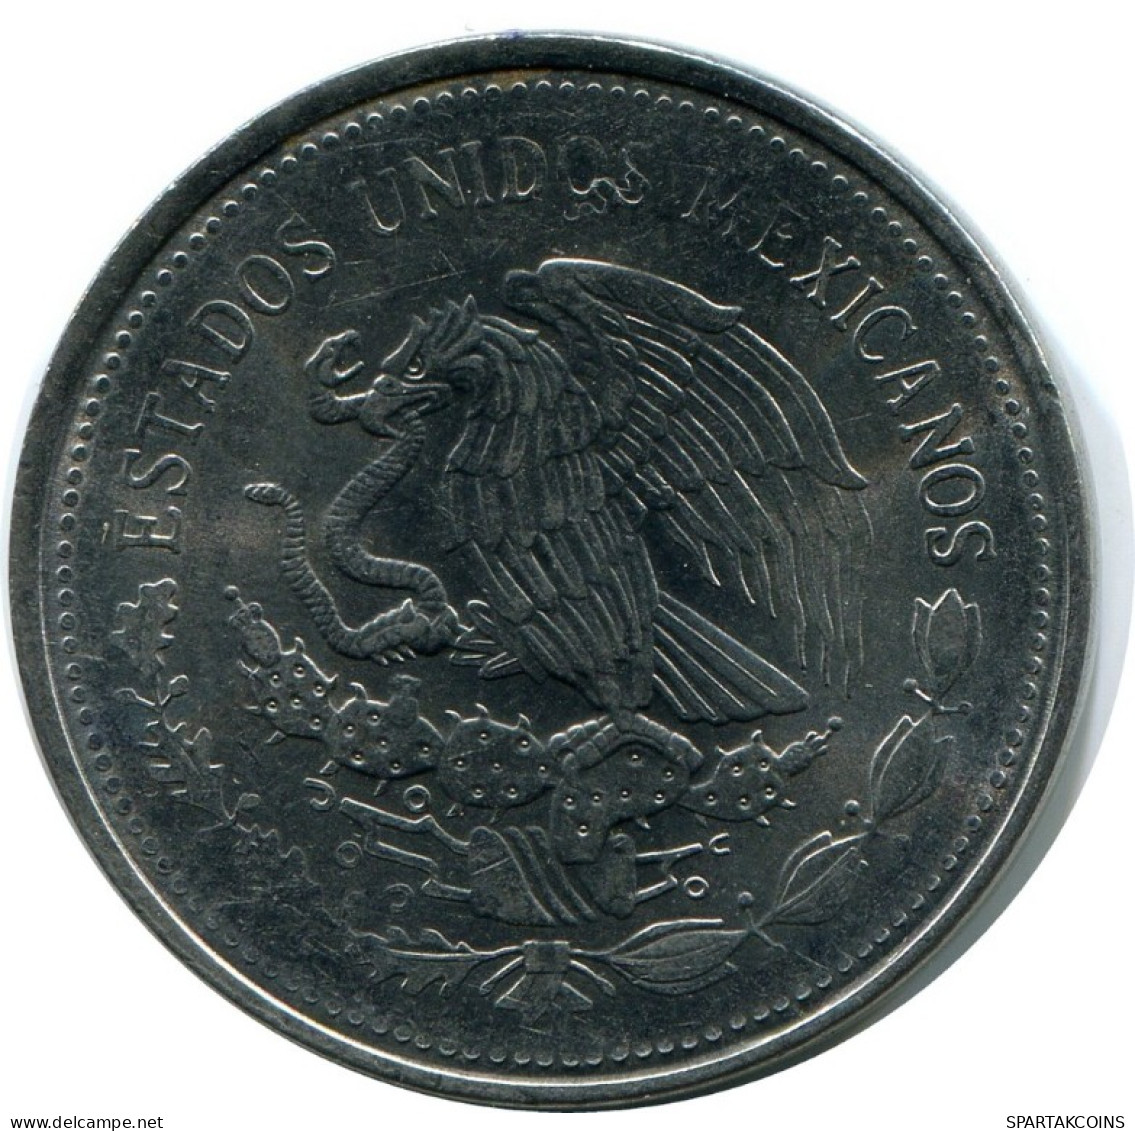 1 PESO 1986 MEXICO Coin #AH472.5.U.A - Mexico